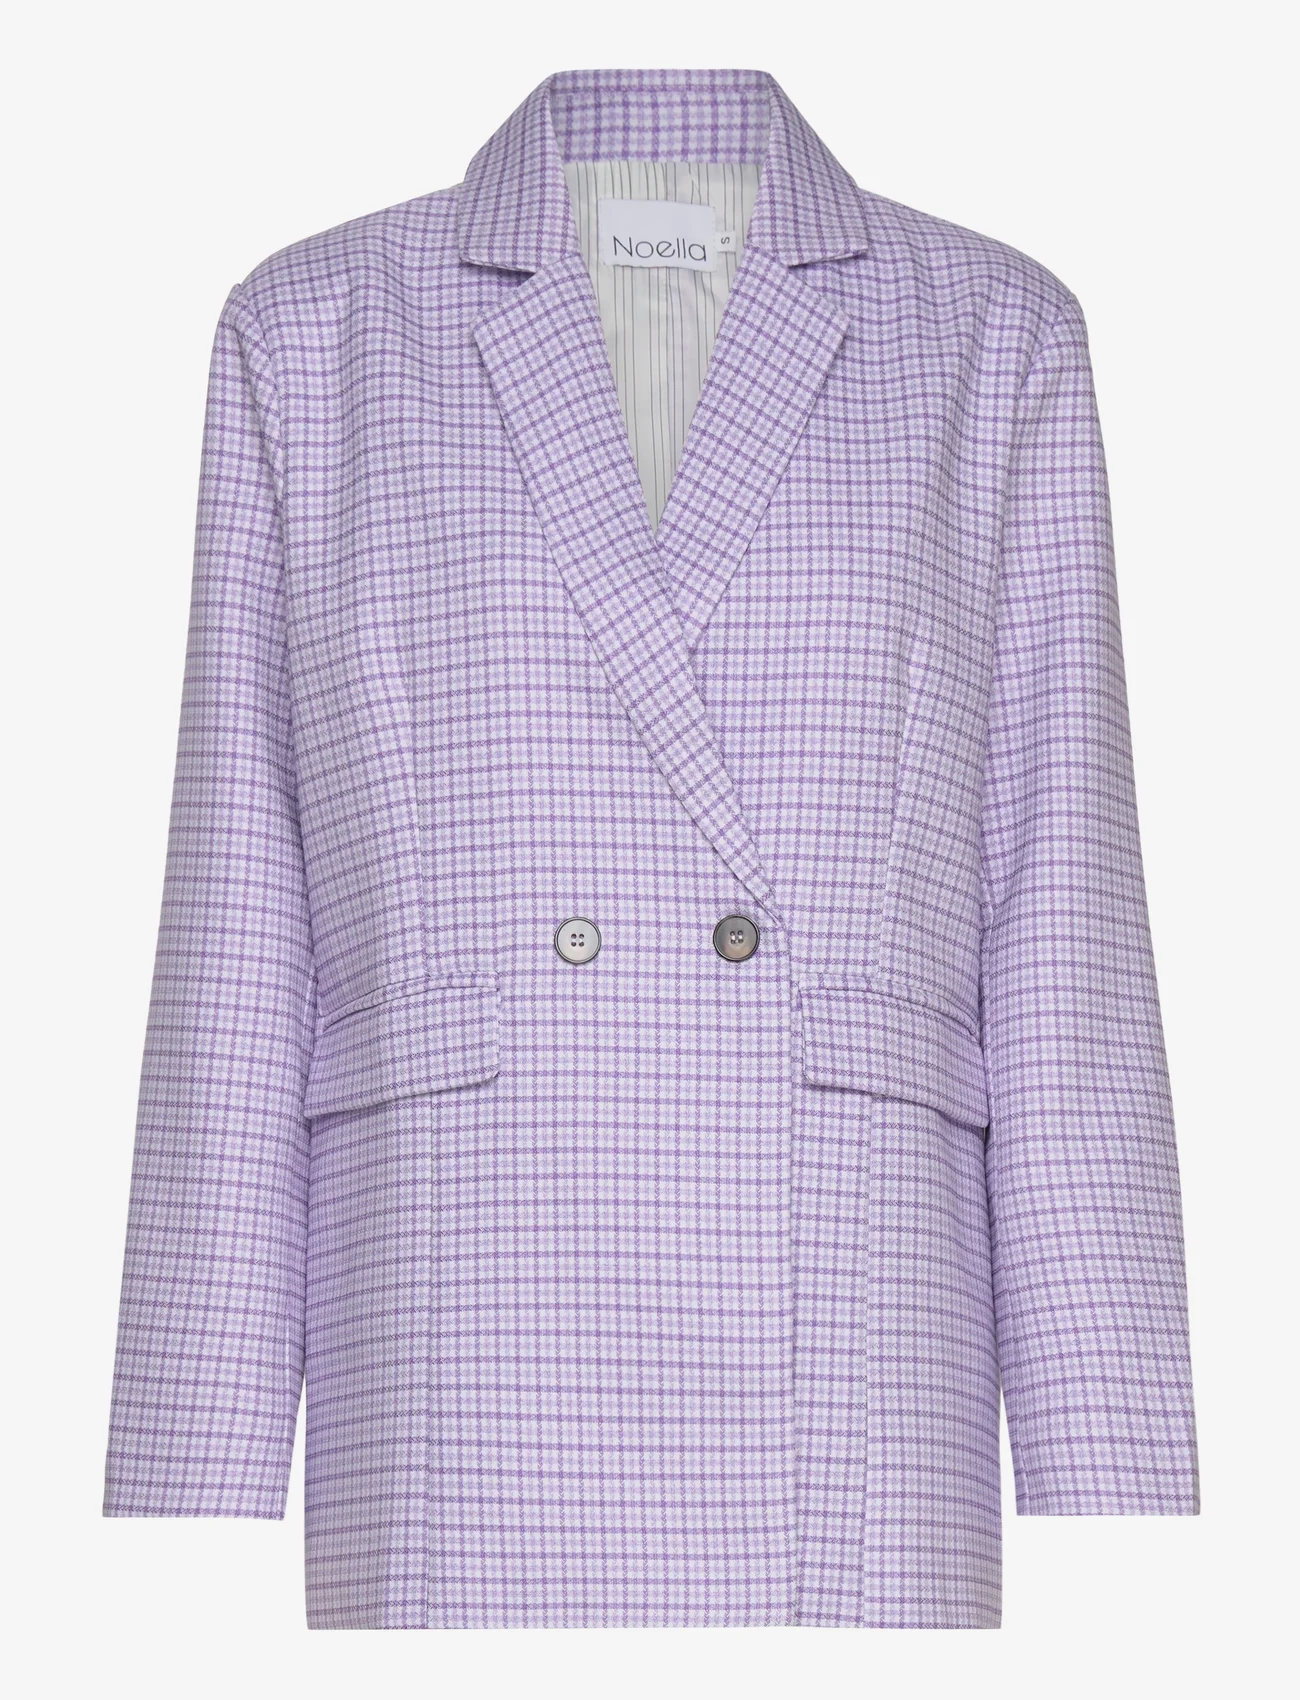 Noella - Mille Oversize Blazer - feestelijke kleding voor outlet-prijzen - lavender check - 0